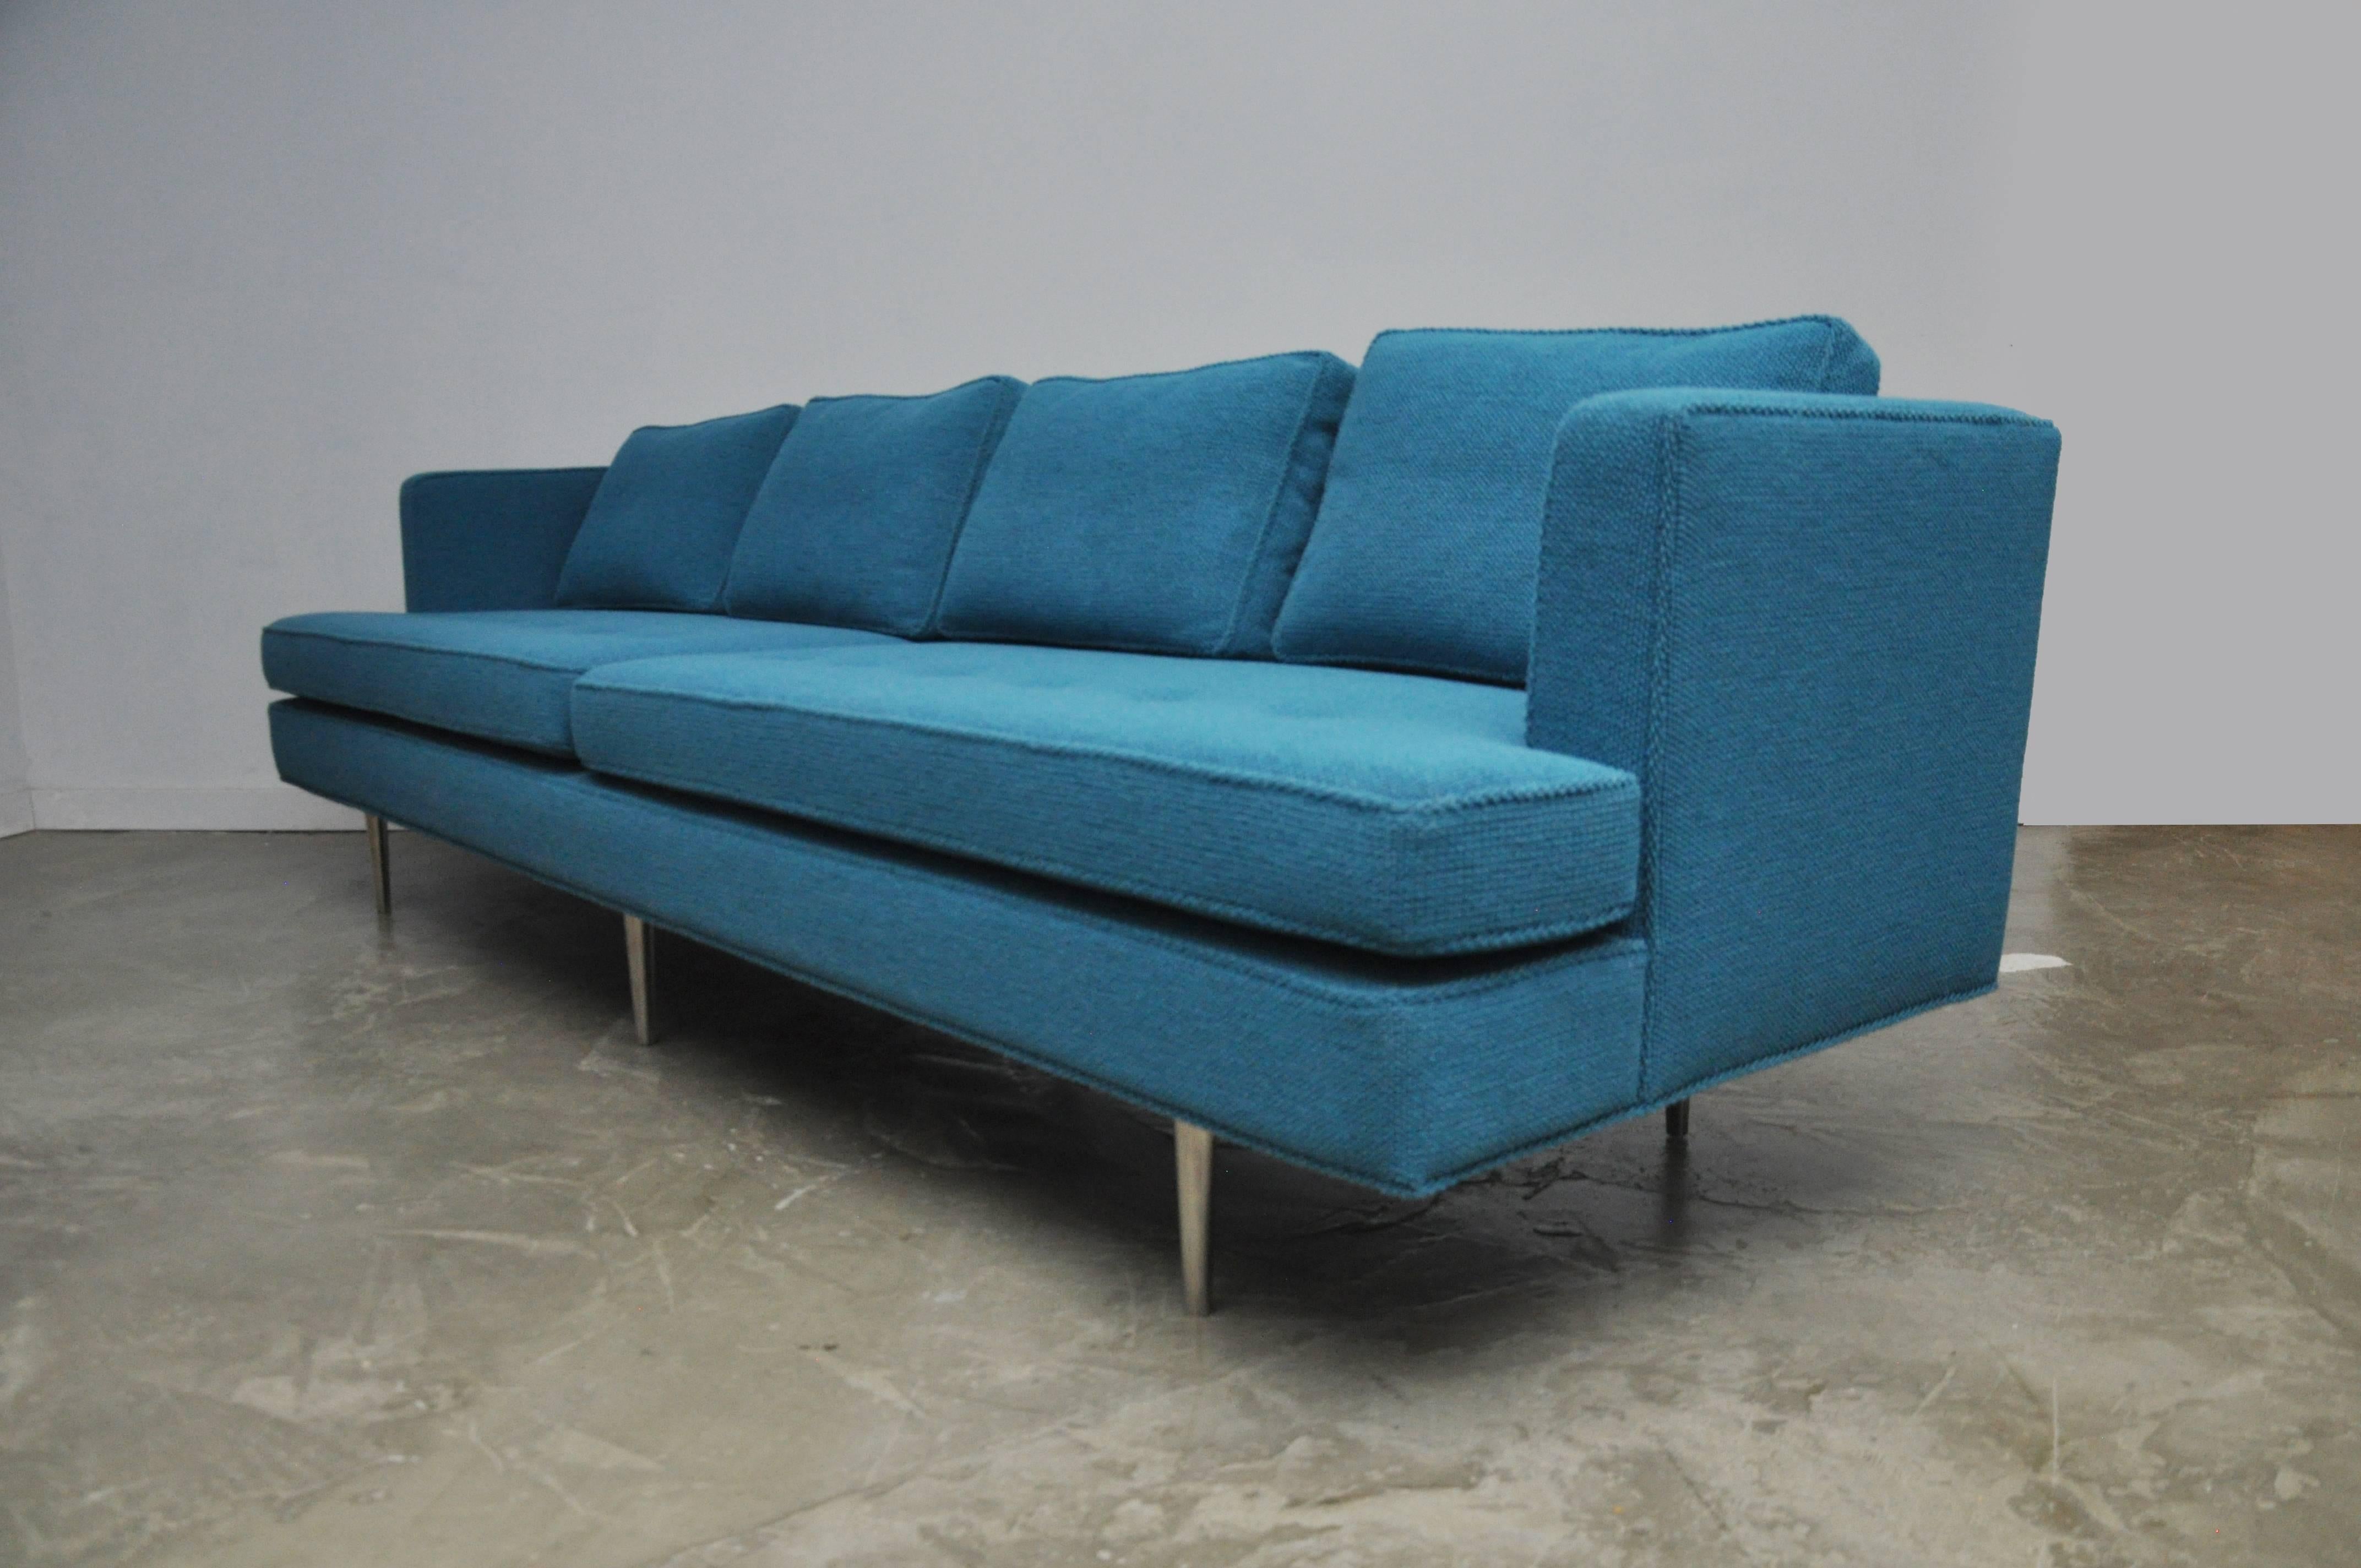 American Dunbar Sofa by Edward Wormley, model 4907 